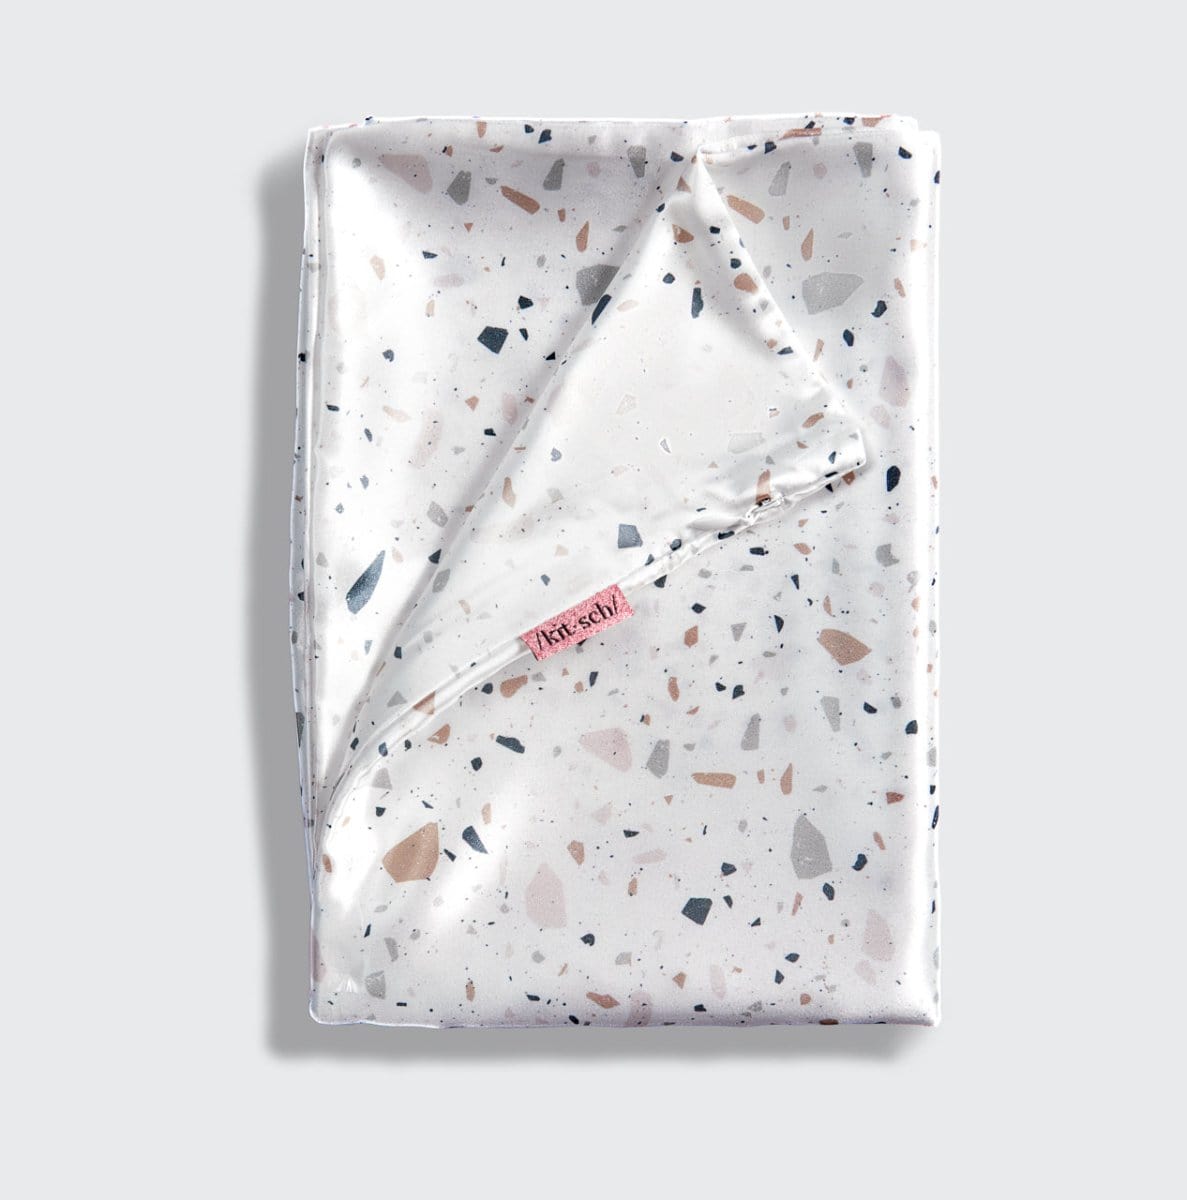 Satin Pillowcase - White Terrazzo